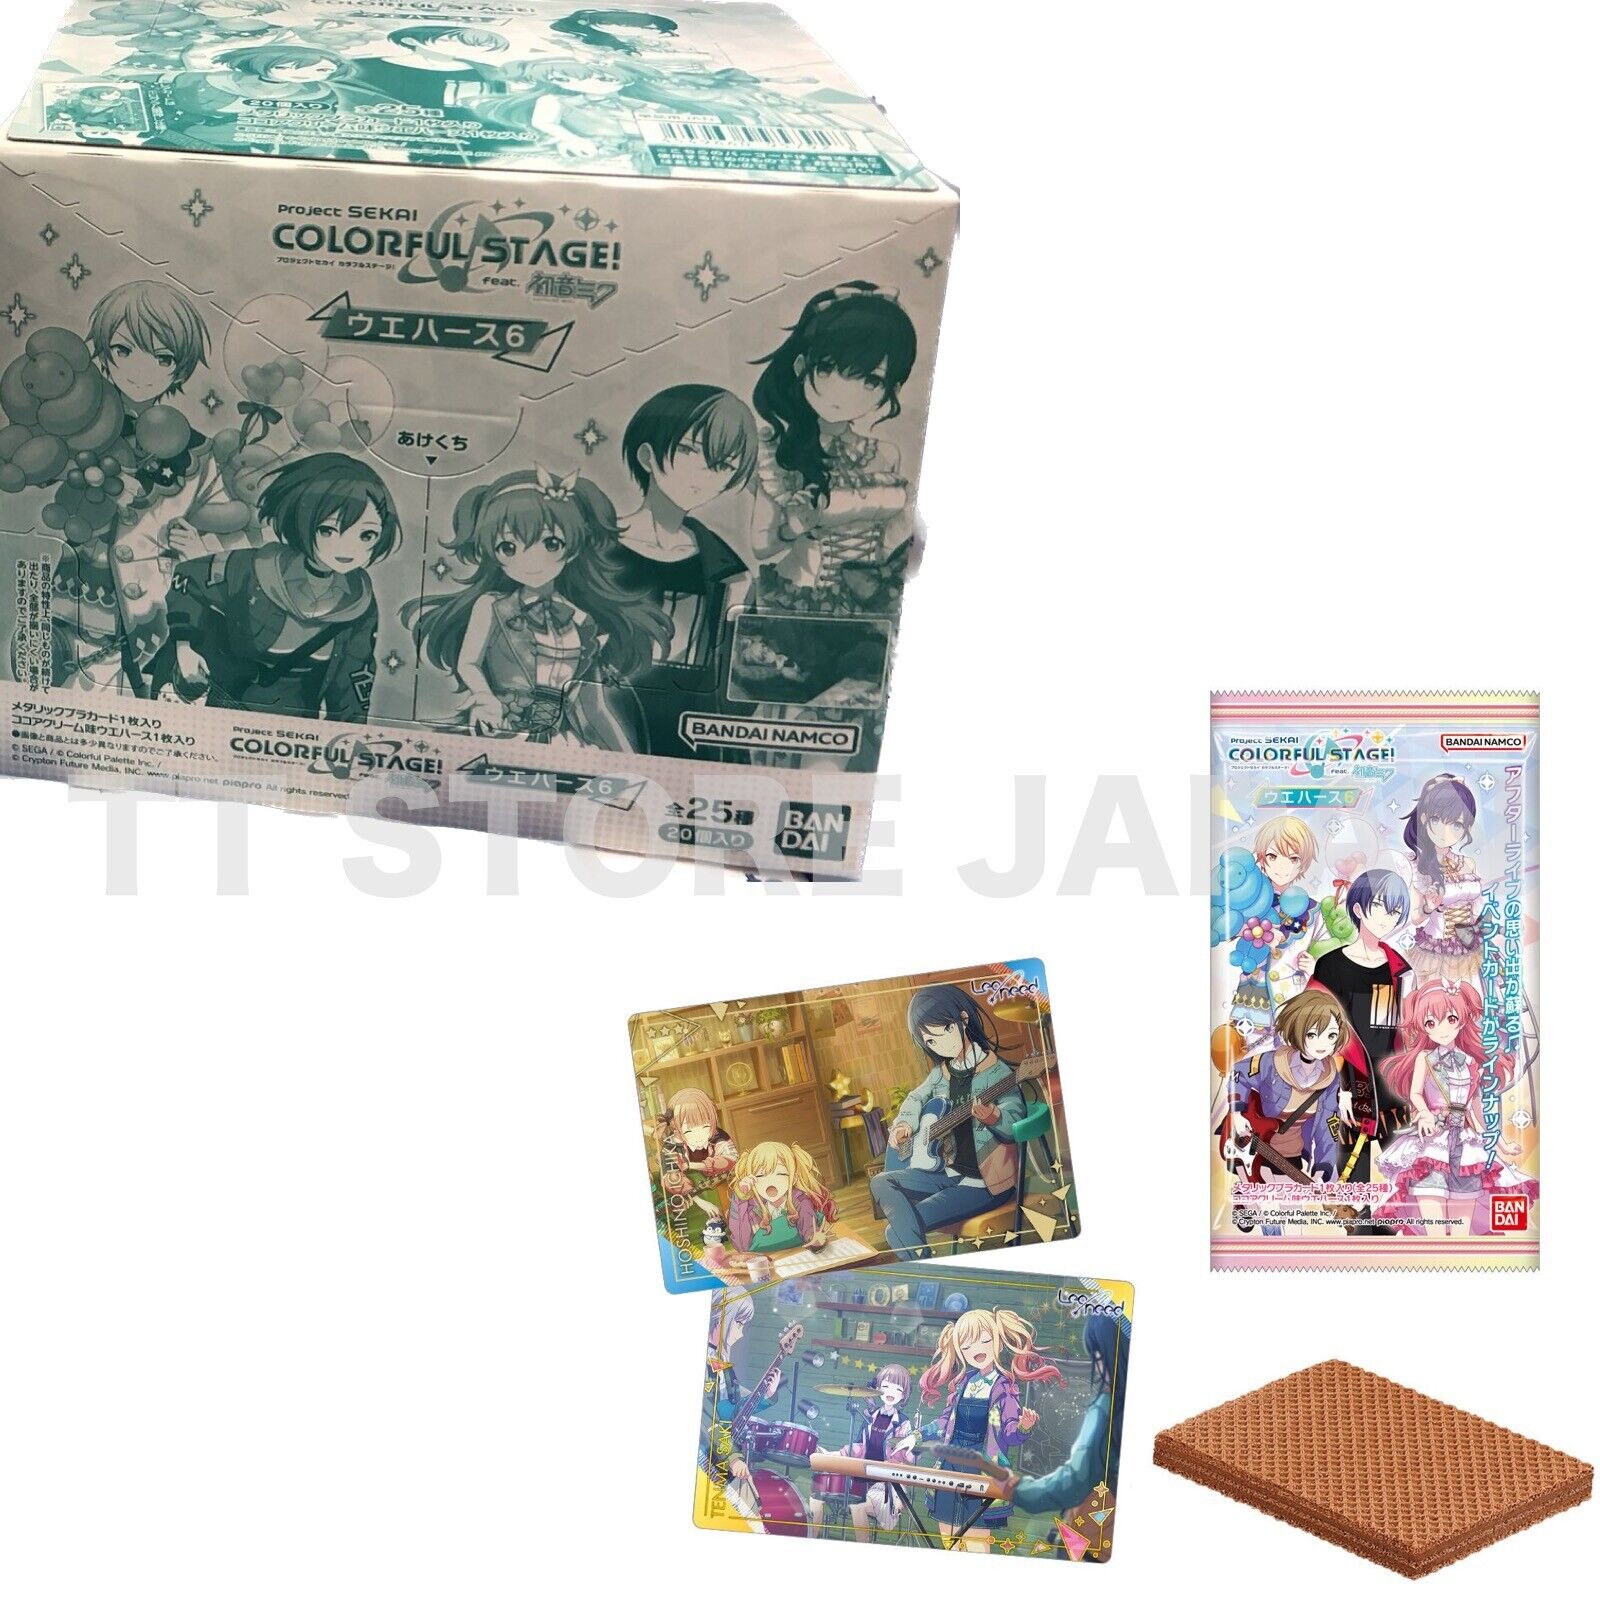 Wafer Card Hatsune Miku Project Sekai Colorful Stage Vol.6 20 Packs Box BANDAI